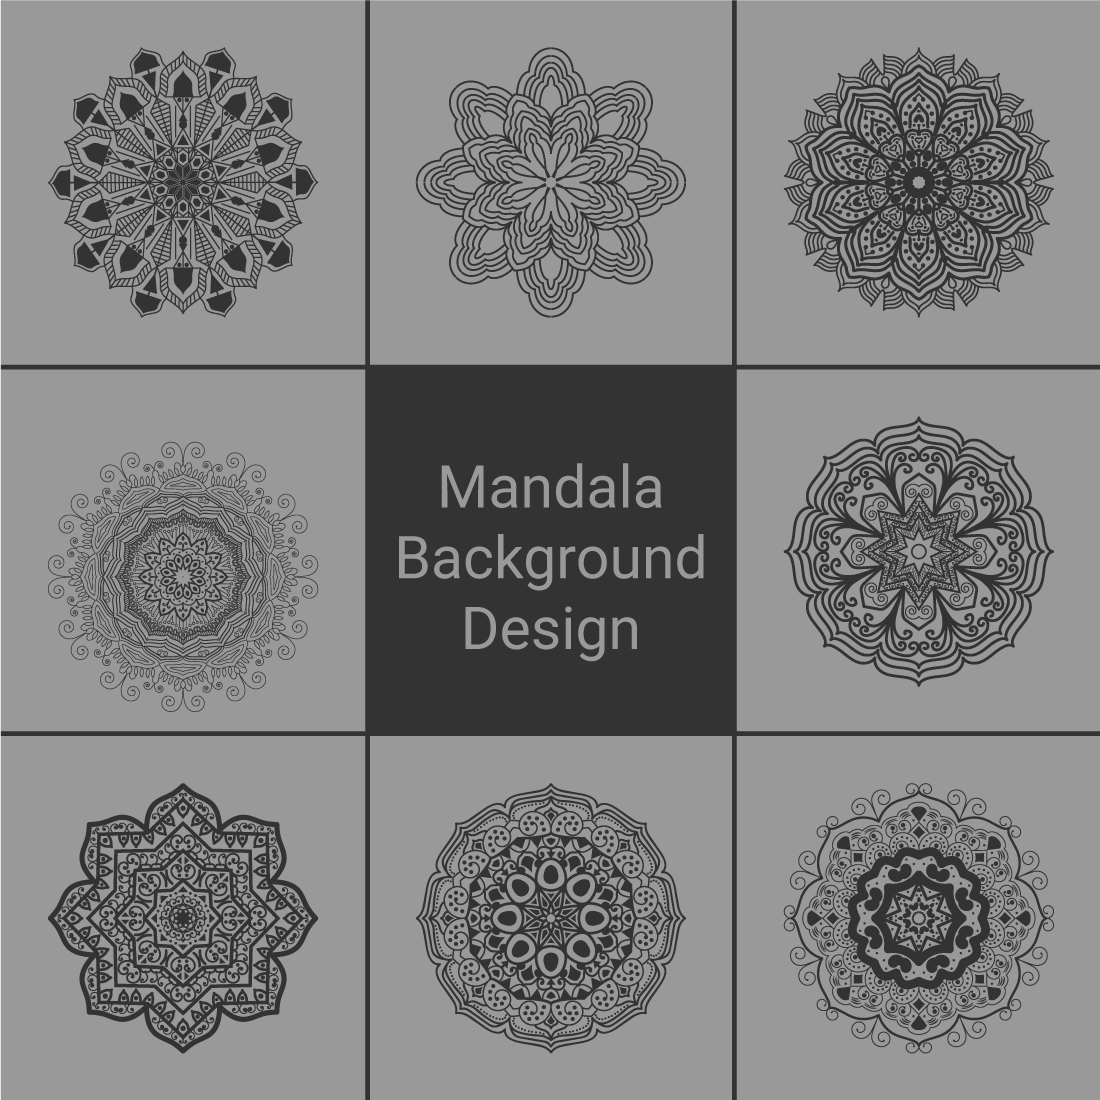 Mandala Background Bundles cover image.